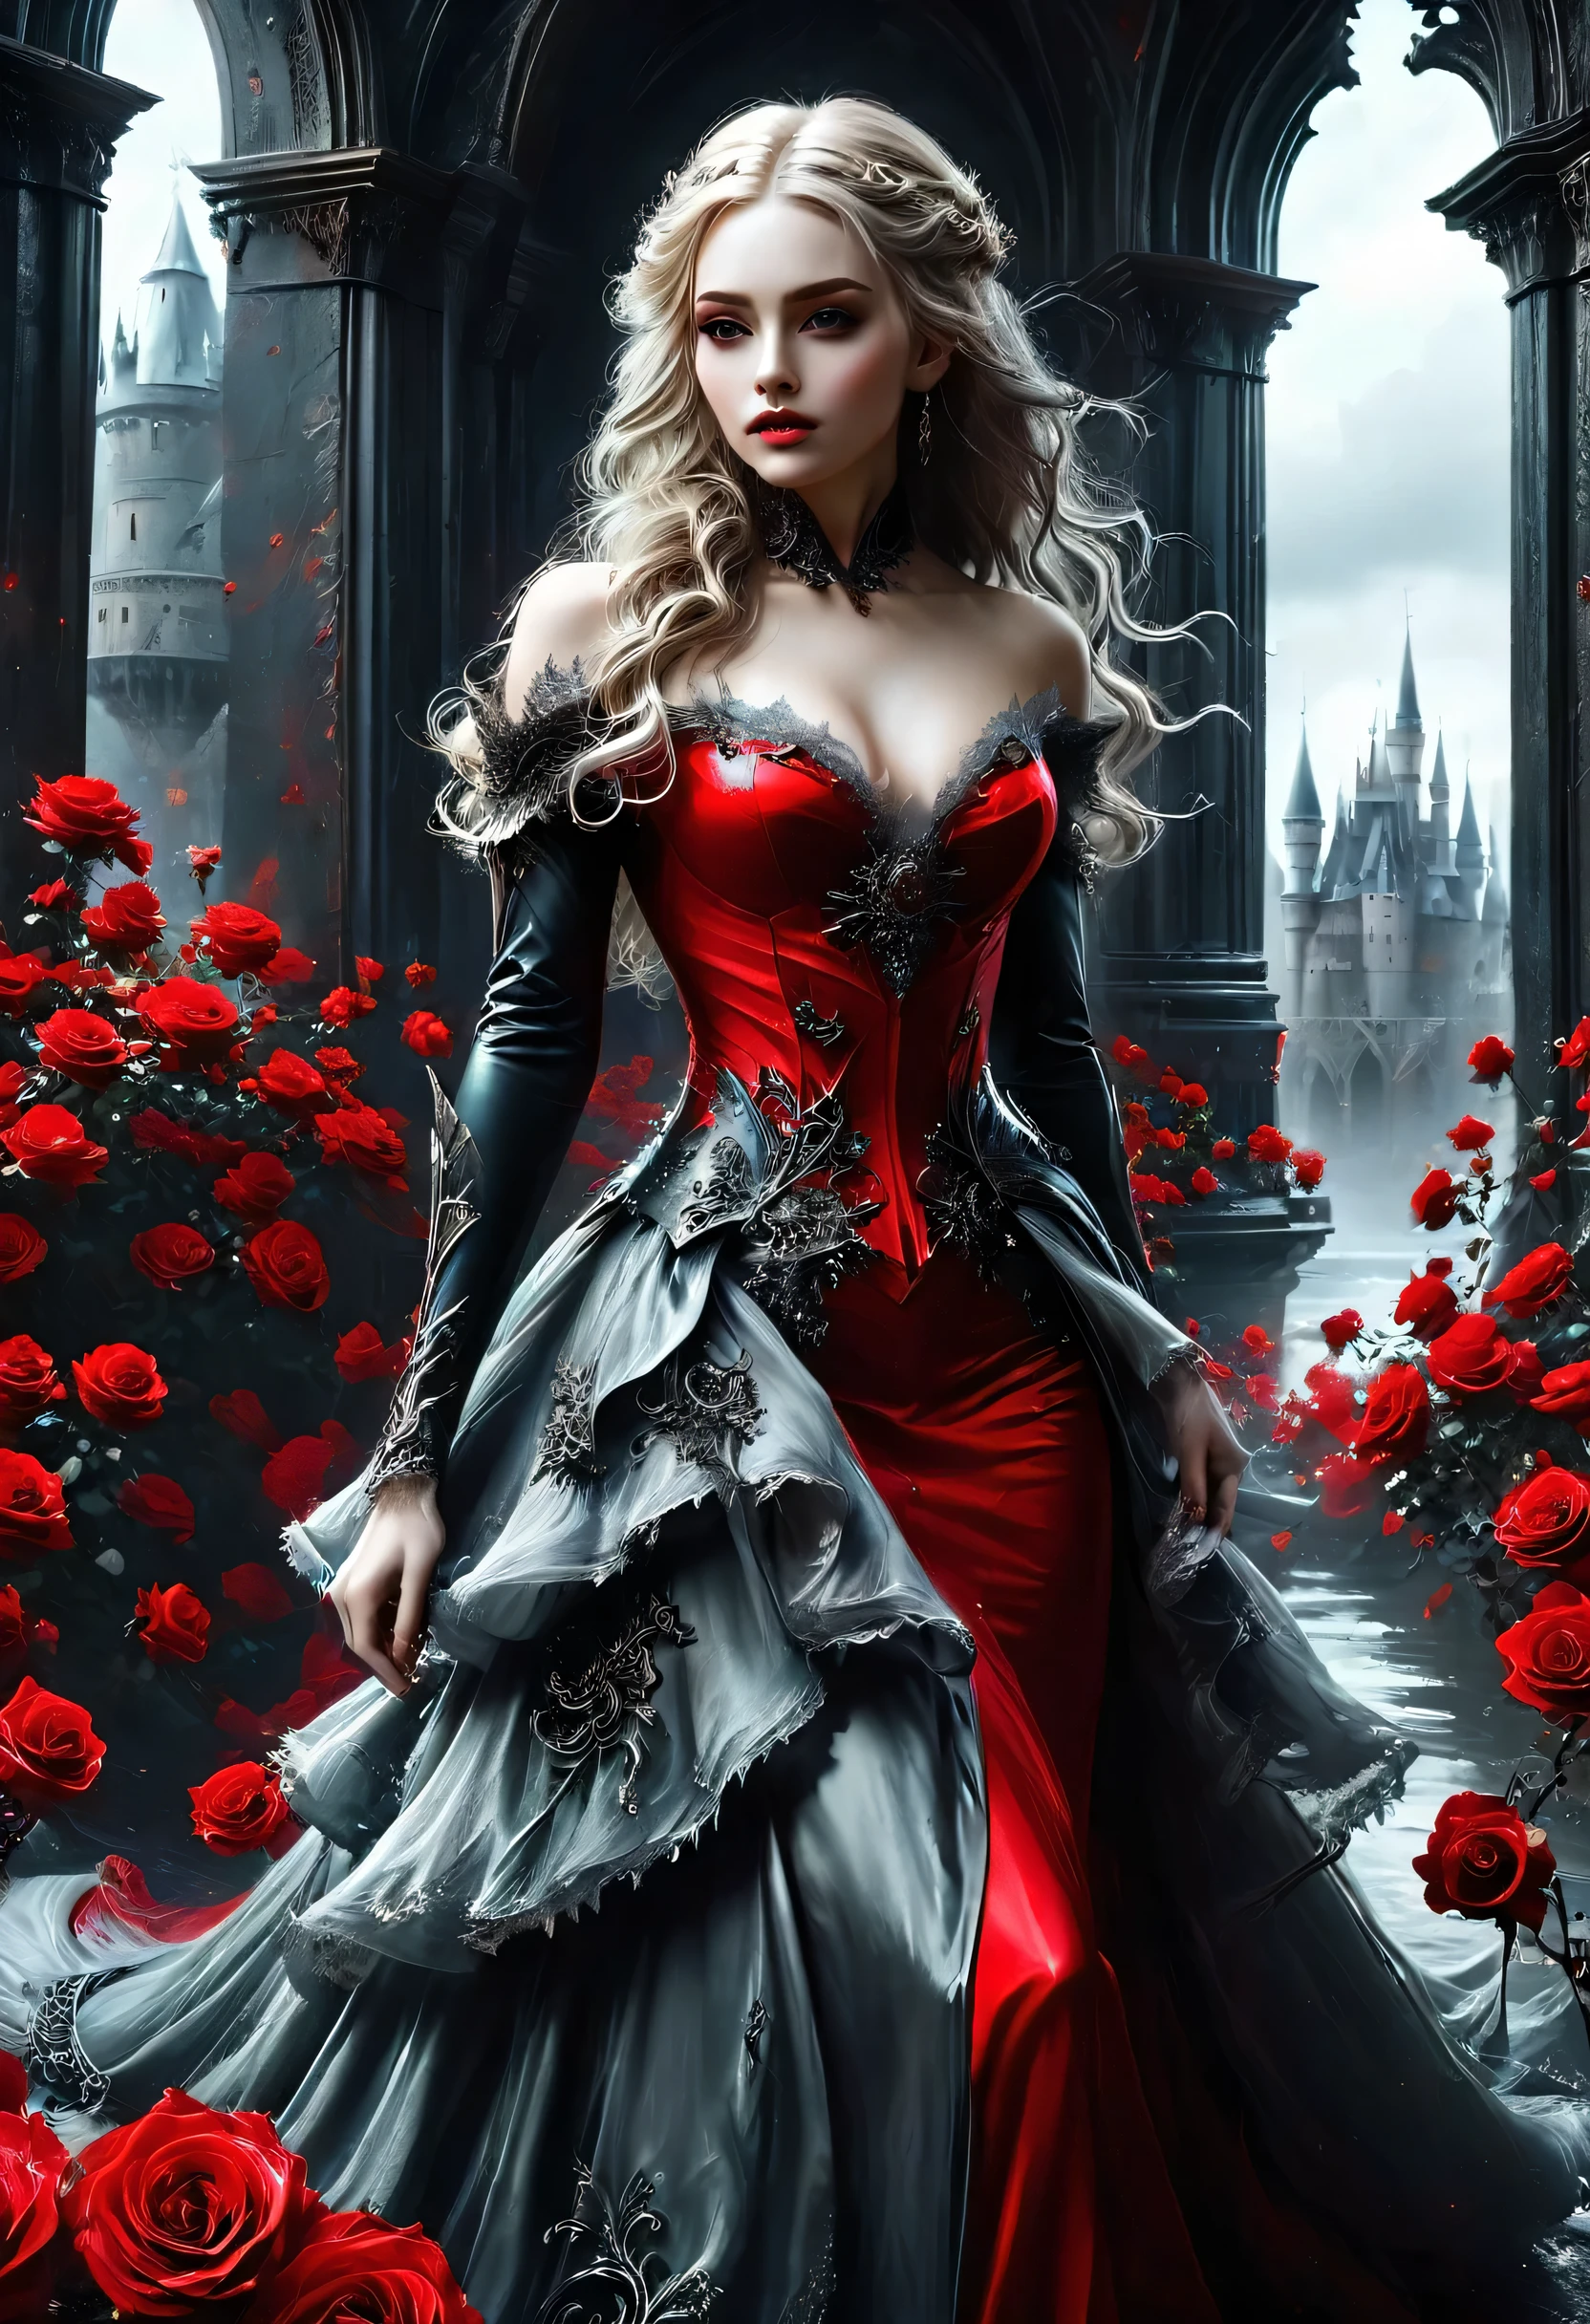 Dark 幻想藝術, 幻想藝術, 歌德藝術,  女吸血鬼的照片, 精緻的美麗, 全身照, 黑暗魅力拍攝,  蒼白的皮膚, 深金色頭髮, 長髮, 捲髮, (冰灰色: 1.3) 眼睛,  她穿著 (紅色的: 1.3) 裙子, Armo紅色的Dress, 纏繞著 (黑色的: 1.3)  玫瑰花, 高跟鞋, 黑暗的城堡門廊, 憤怒星雲